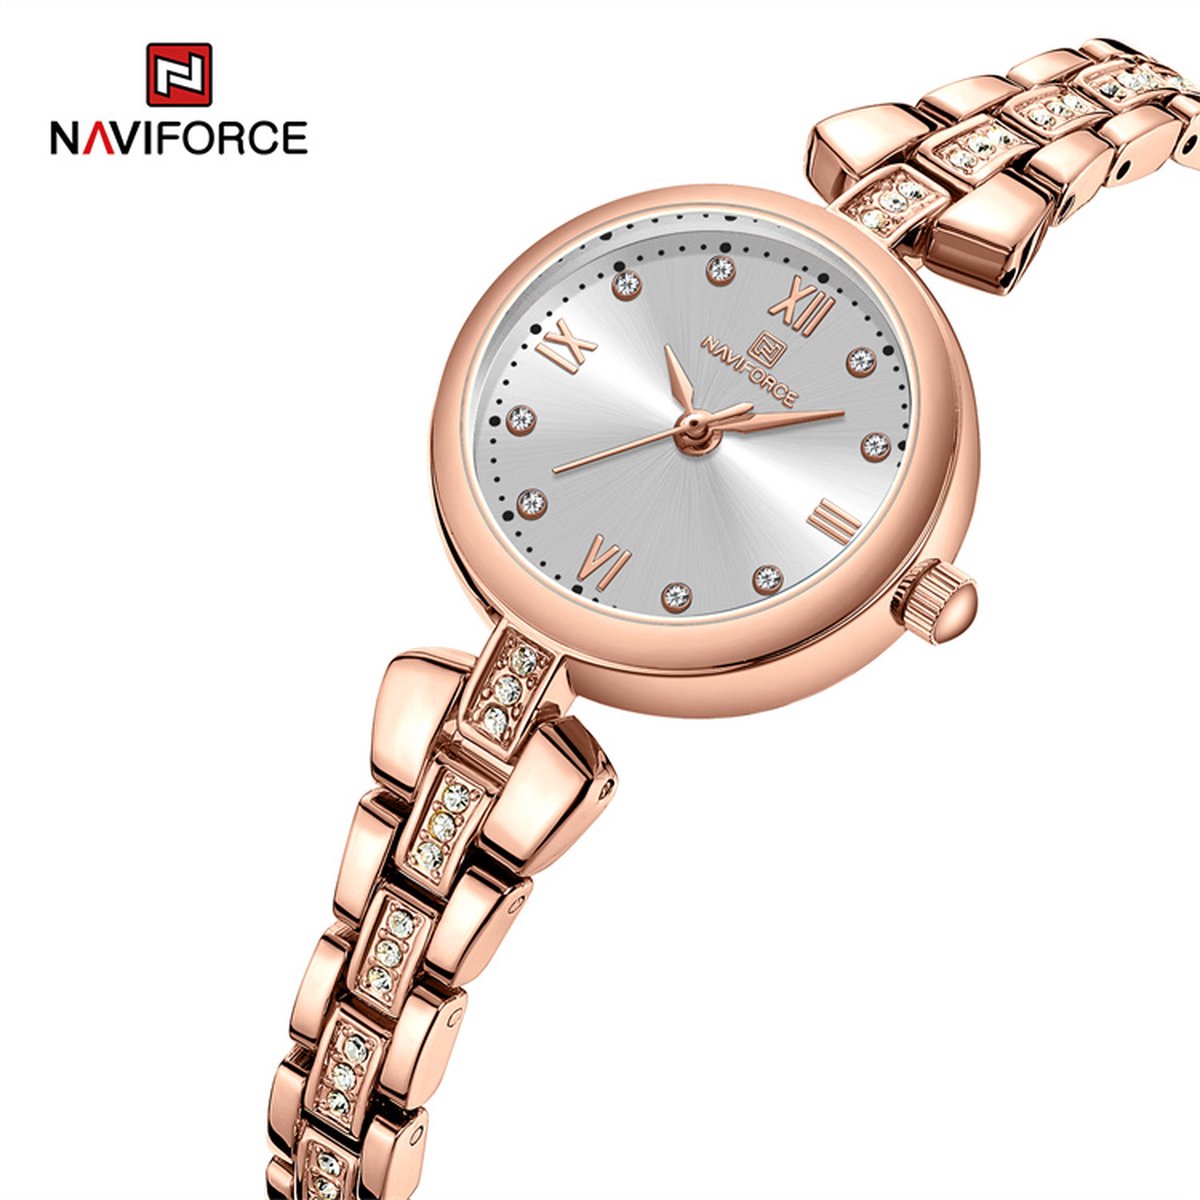 NAVIFORCE horloge met kristal diamantjes, roze gouden stalen polsband, witte wijzerplaat, roze gouden horlogekast en wijzers, voor dames met stijl ( model 5034 RGW )